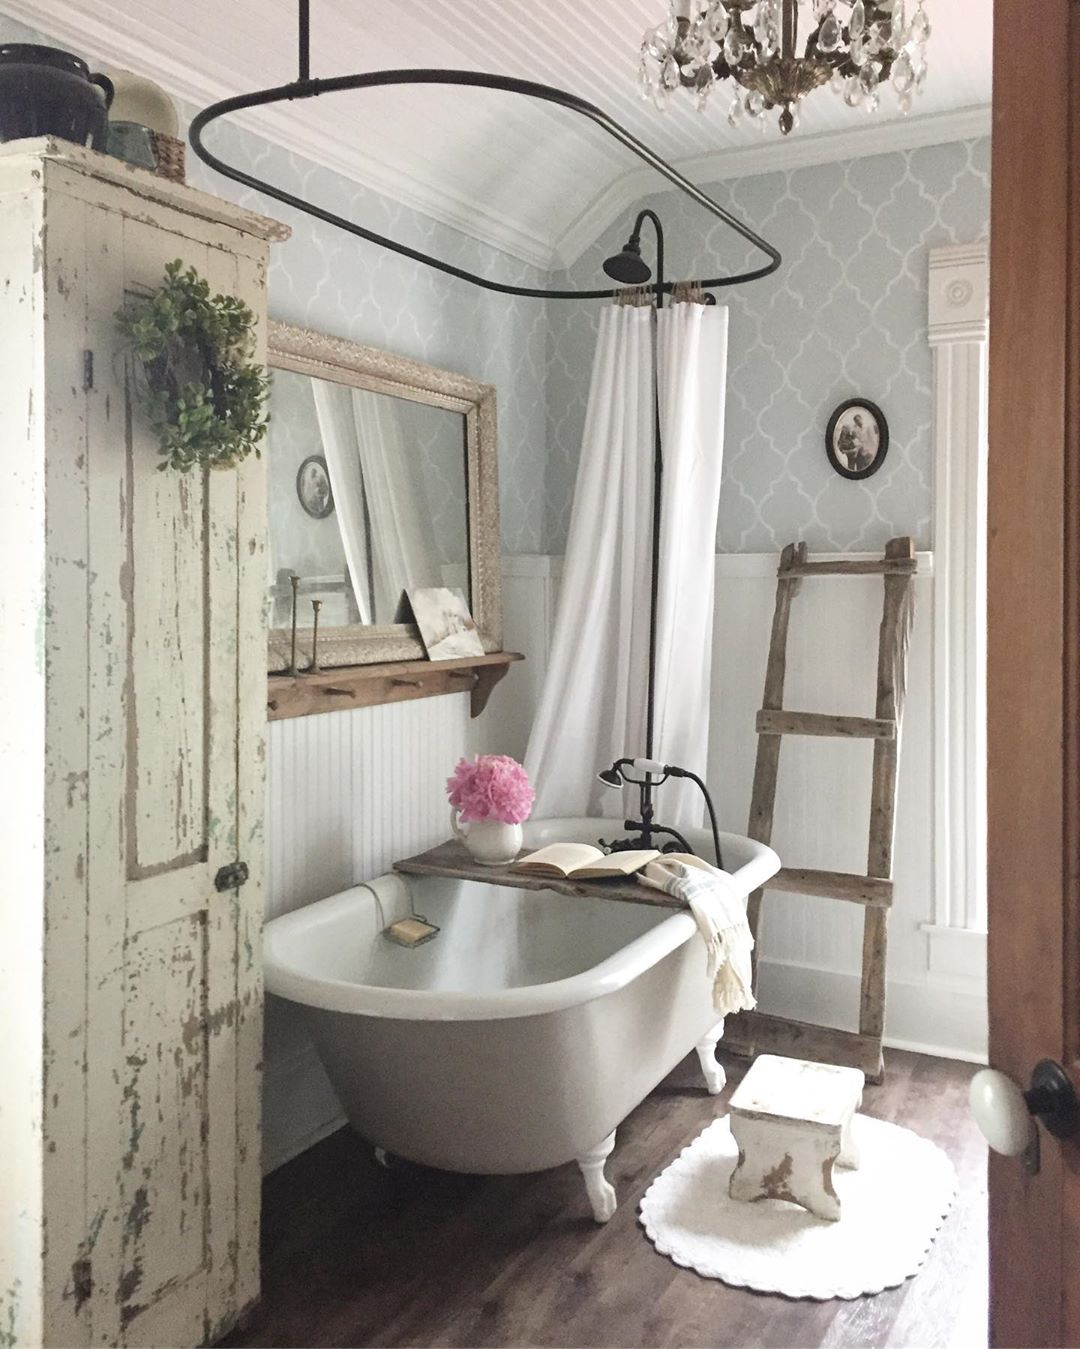 Rustic bathroom with blue wallpaper and big tub. Photo by Instagram user @bryartonfarm